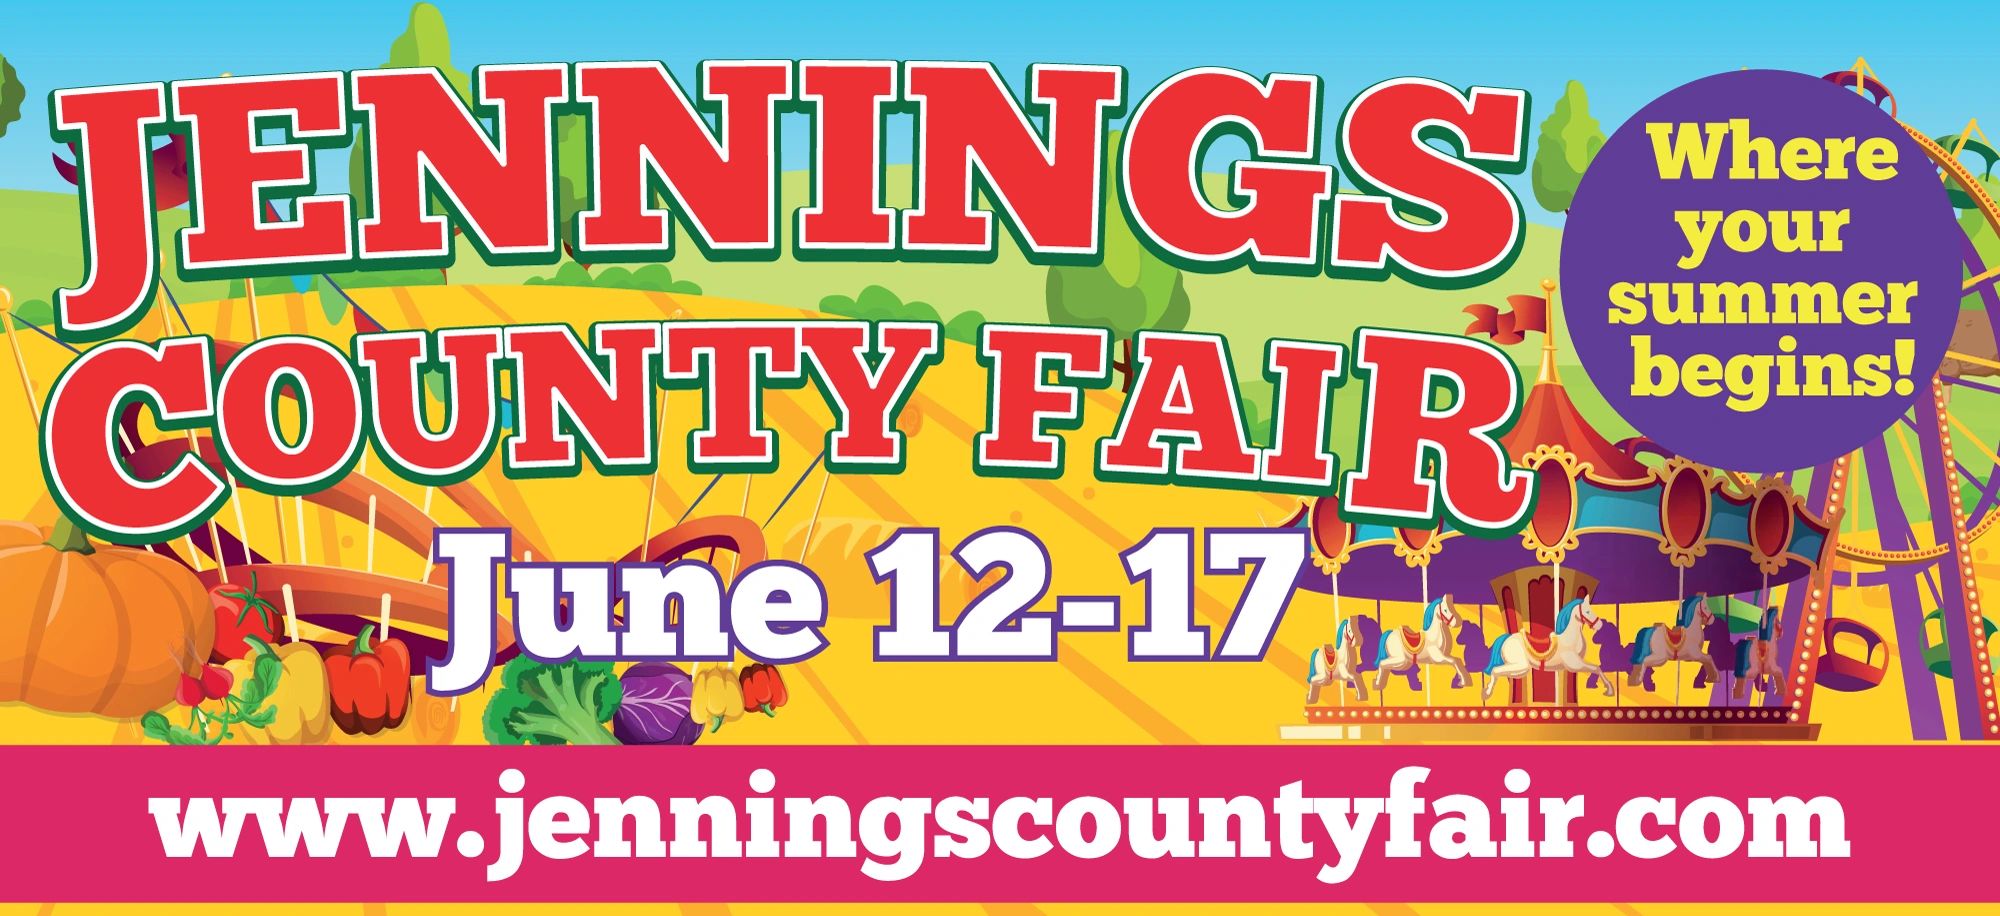 Jennings County Fair